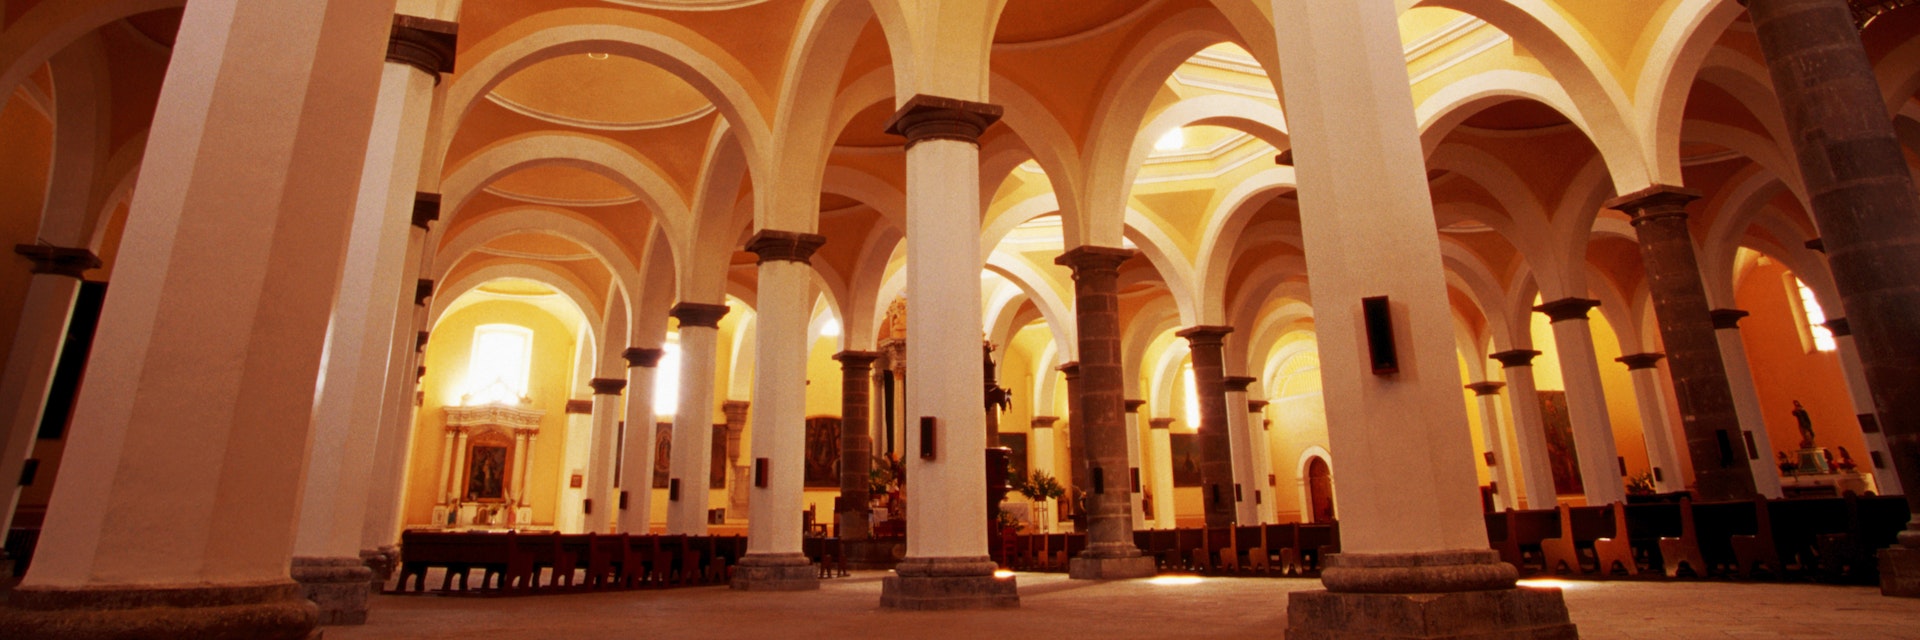 Royal Chapel interior at ex-convent of San Gabriel.